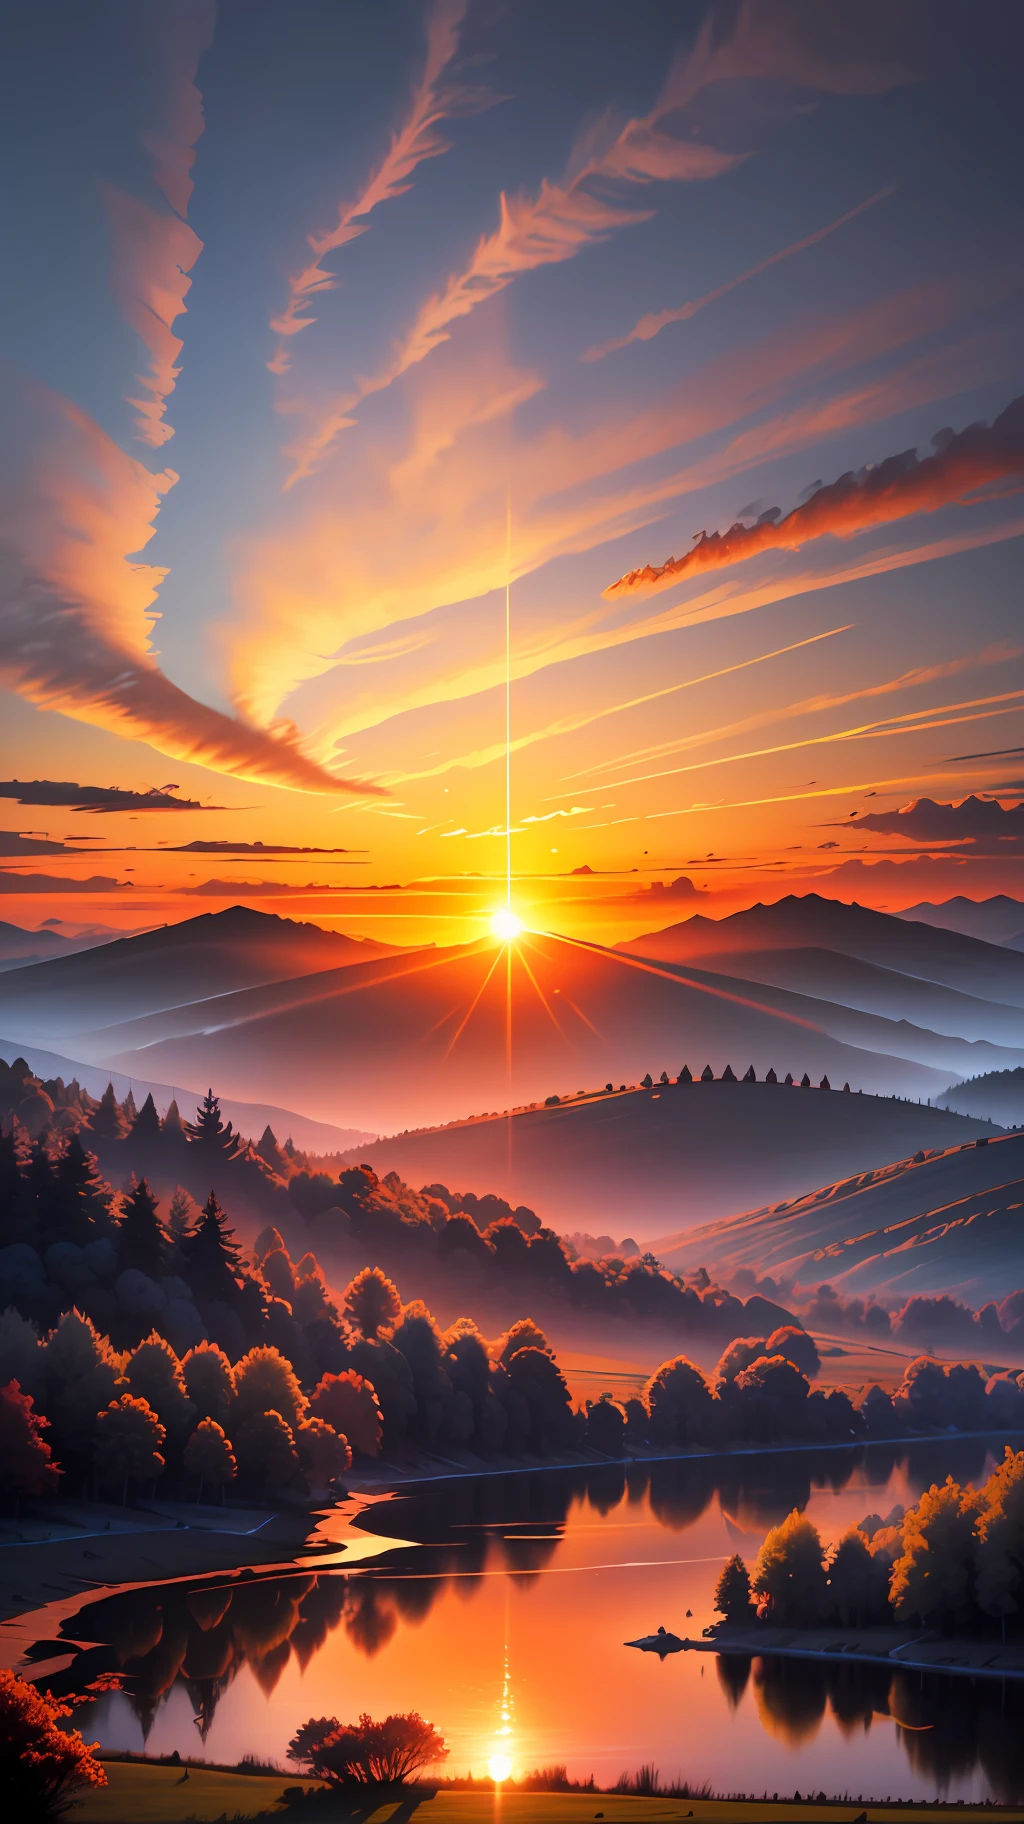 Изображение, изображающее сияющий восход солнца над спокойным и безмятежным пейзажем.